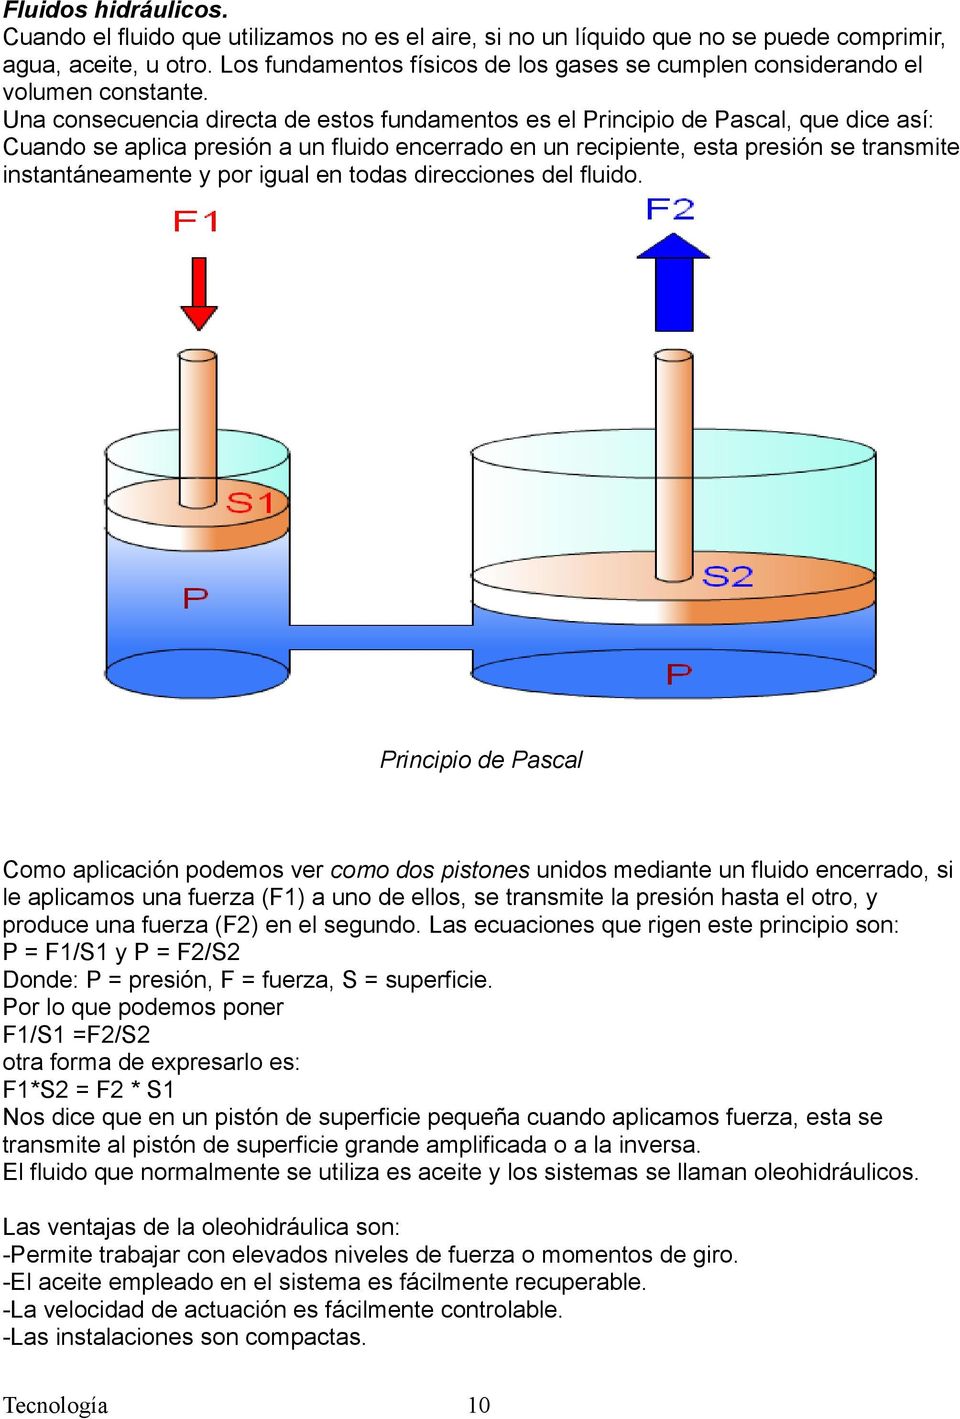 Una consecuencia directa de estos fundamentos es el Principio de Pascal, que dice así: Cuando se aplica presión a un fluido encerrado en un recipiente, esta presión se transmite instantáneamente y